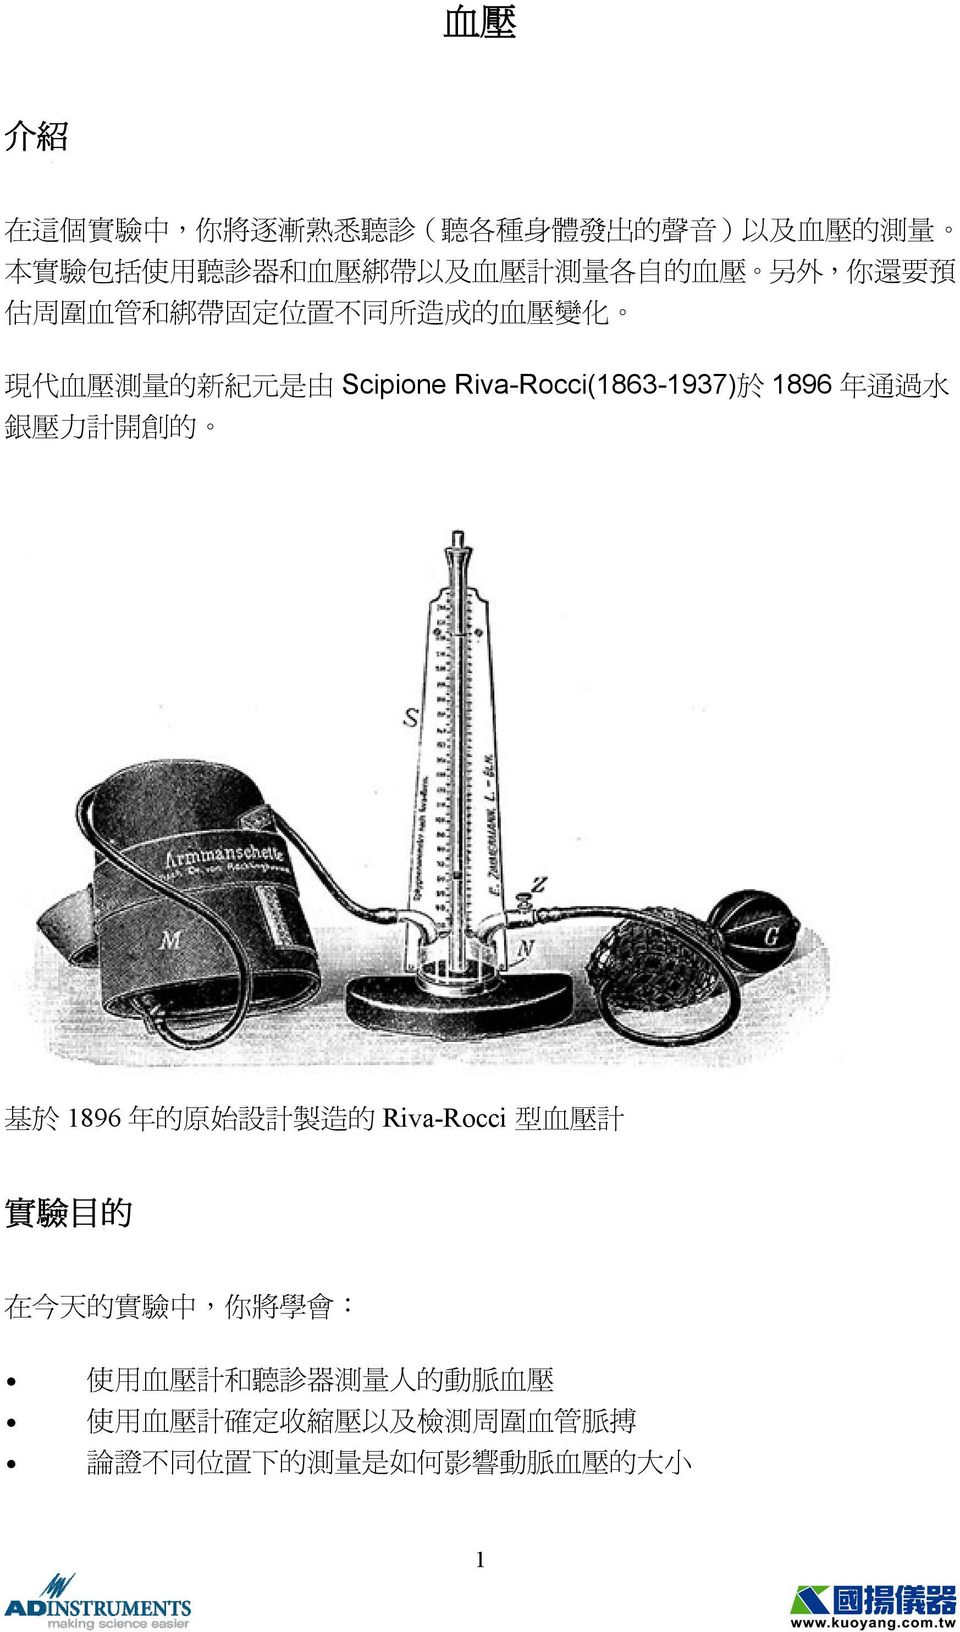 Riva-Rocci(1863-1937) 於 1896 年 通 過 水 銀 壓 力 計 開 創 的 基 於 1896 年 的 原 始 設 計 製 造 的 Riva-Rocci 型 血 壓 計 實 驗 目 的 在 今 天 的 實 驗